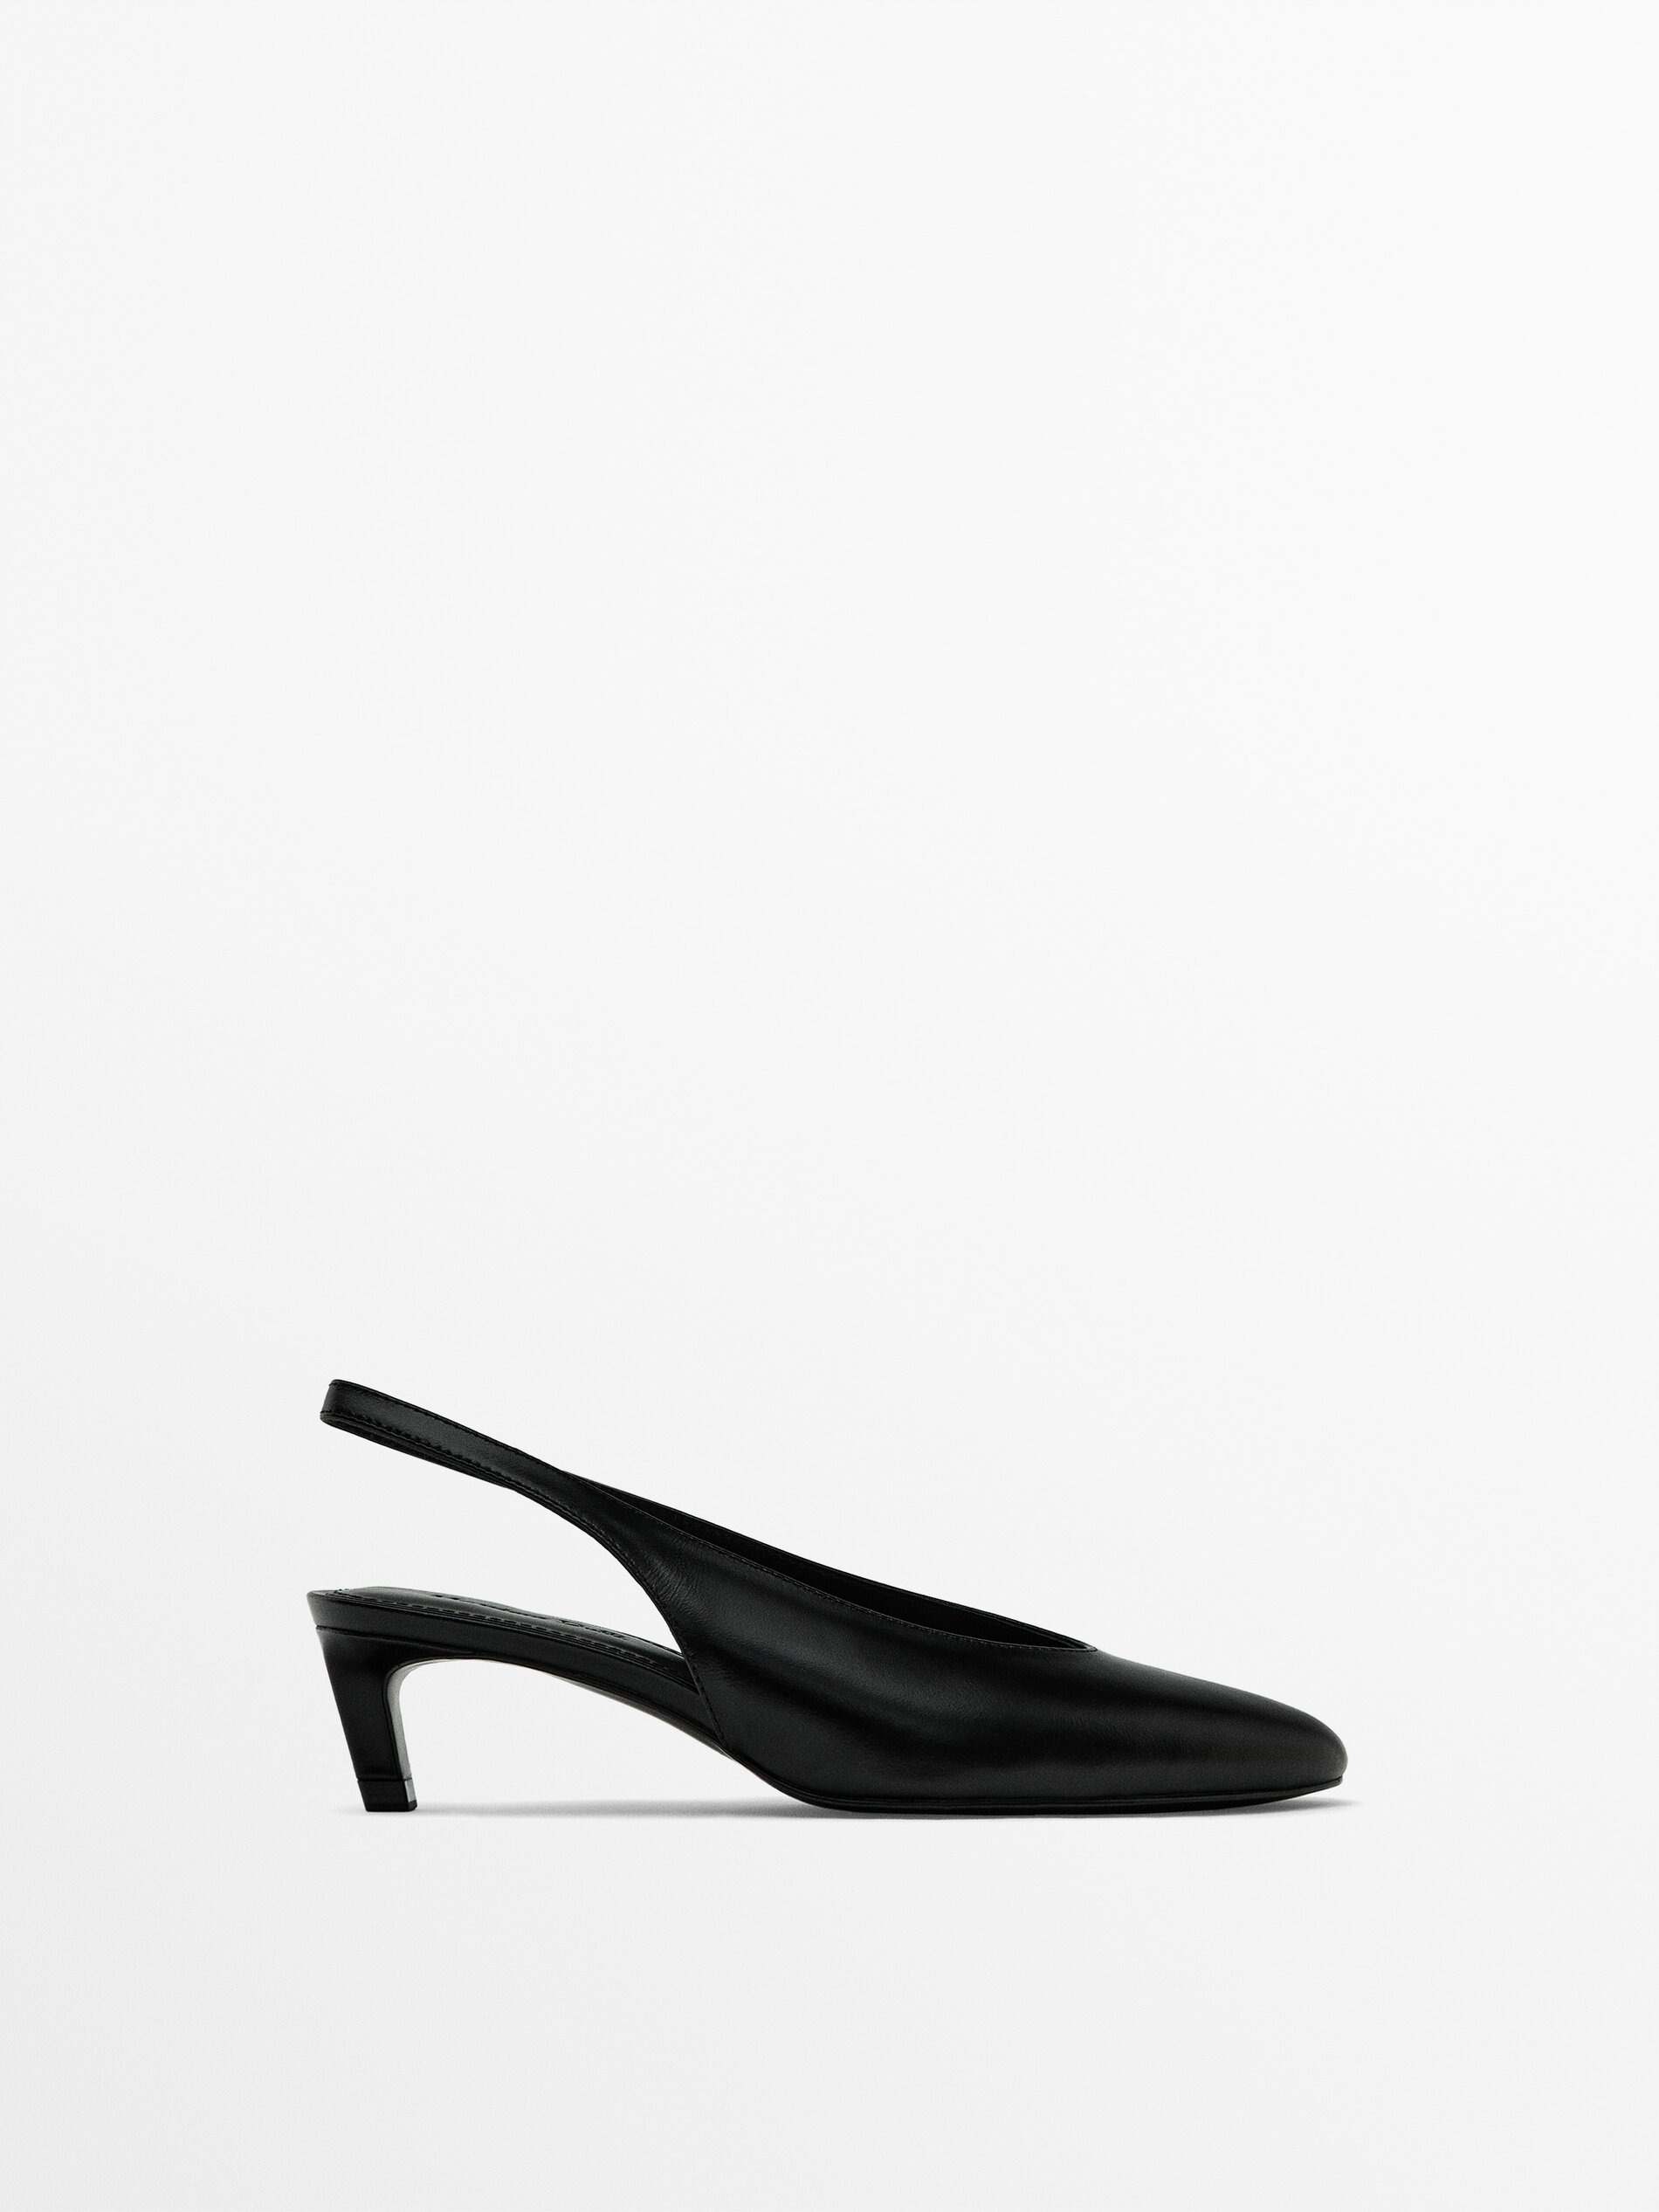 Massimo Dutti + Round-Toe Slingback Heeled Shoes